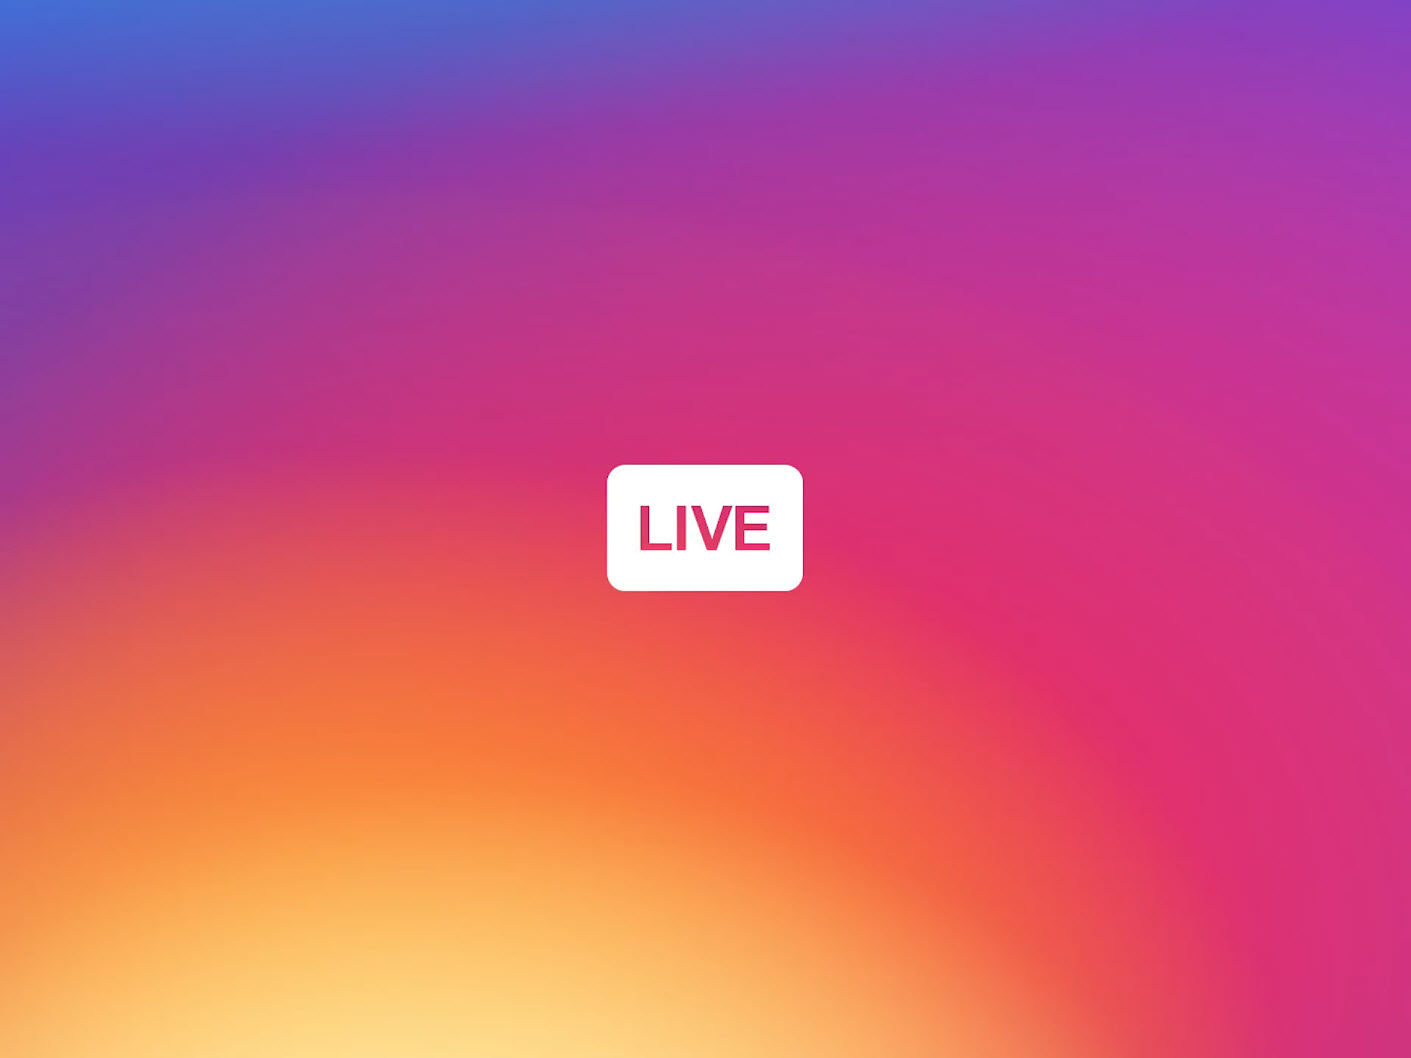 สดกันได้แล้ว! Instagram เปิดตัว Live Video อย่างเป็นทางการ พร้อมฟีเจอร์ใหม่ใน Direct